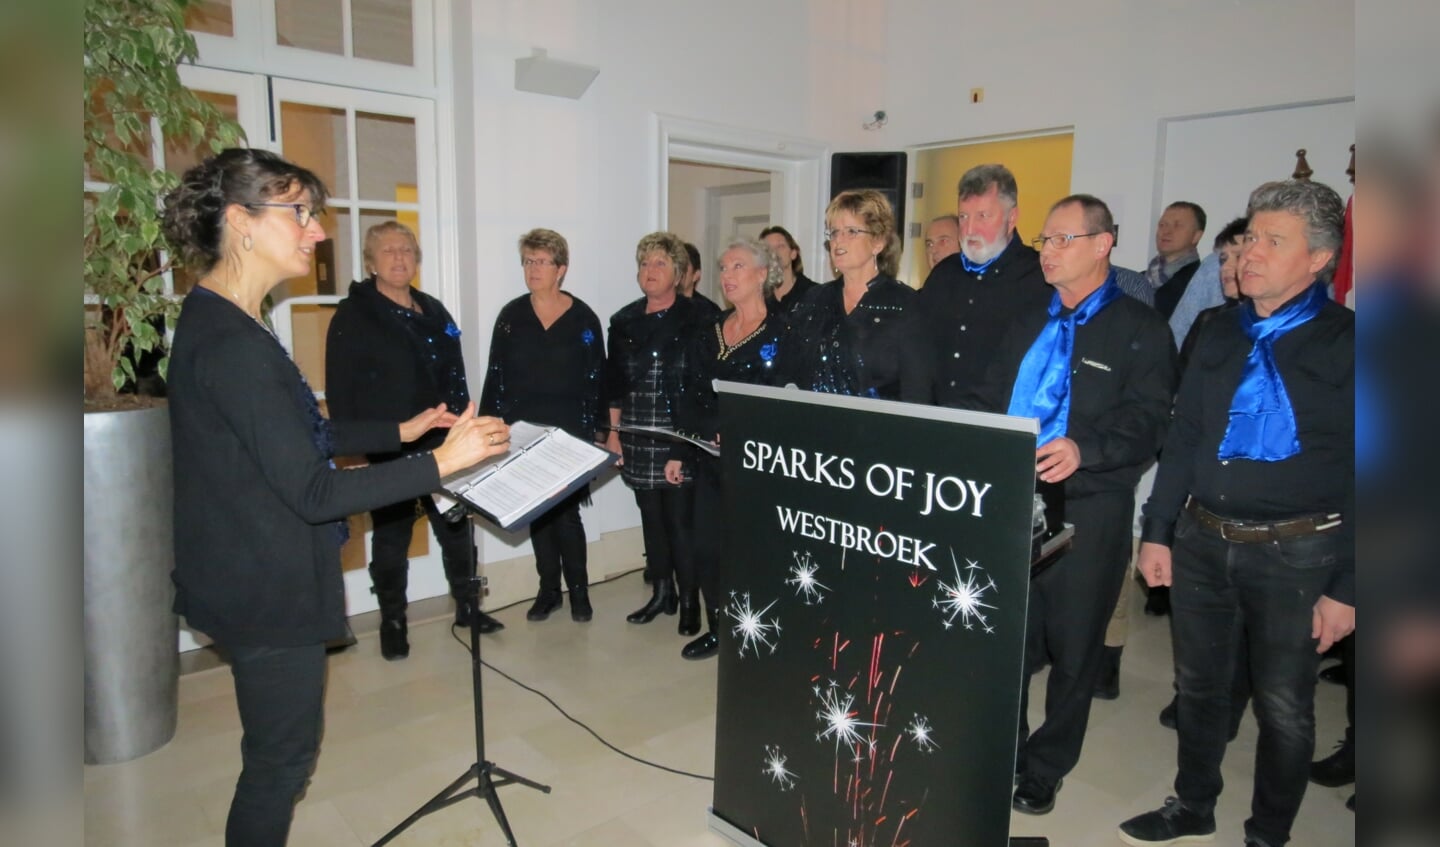 Gospelkoor Sparks of Joy uit Westbroek verwelkomde de bezoekers bij binnenkomst.